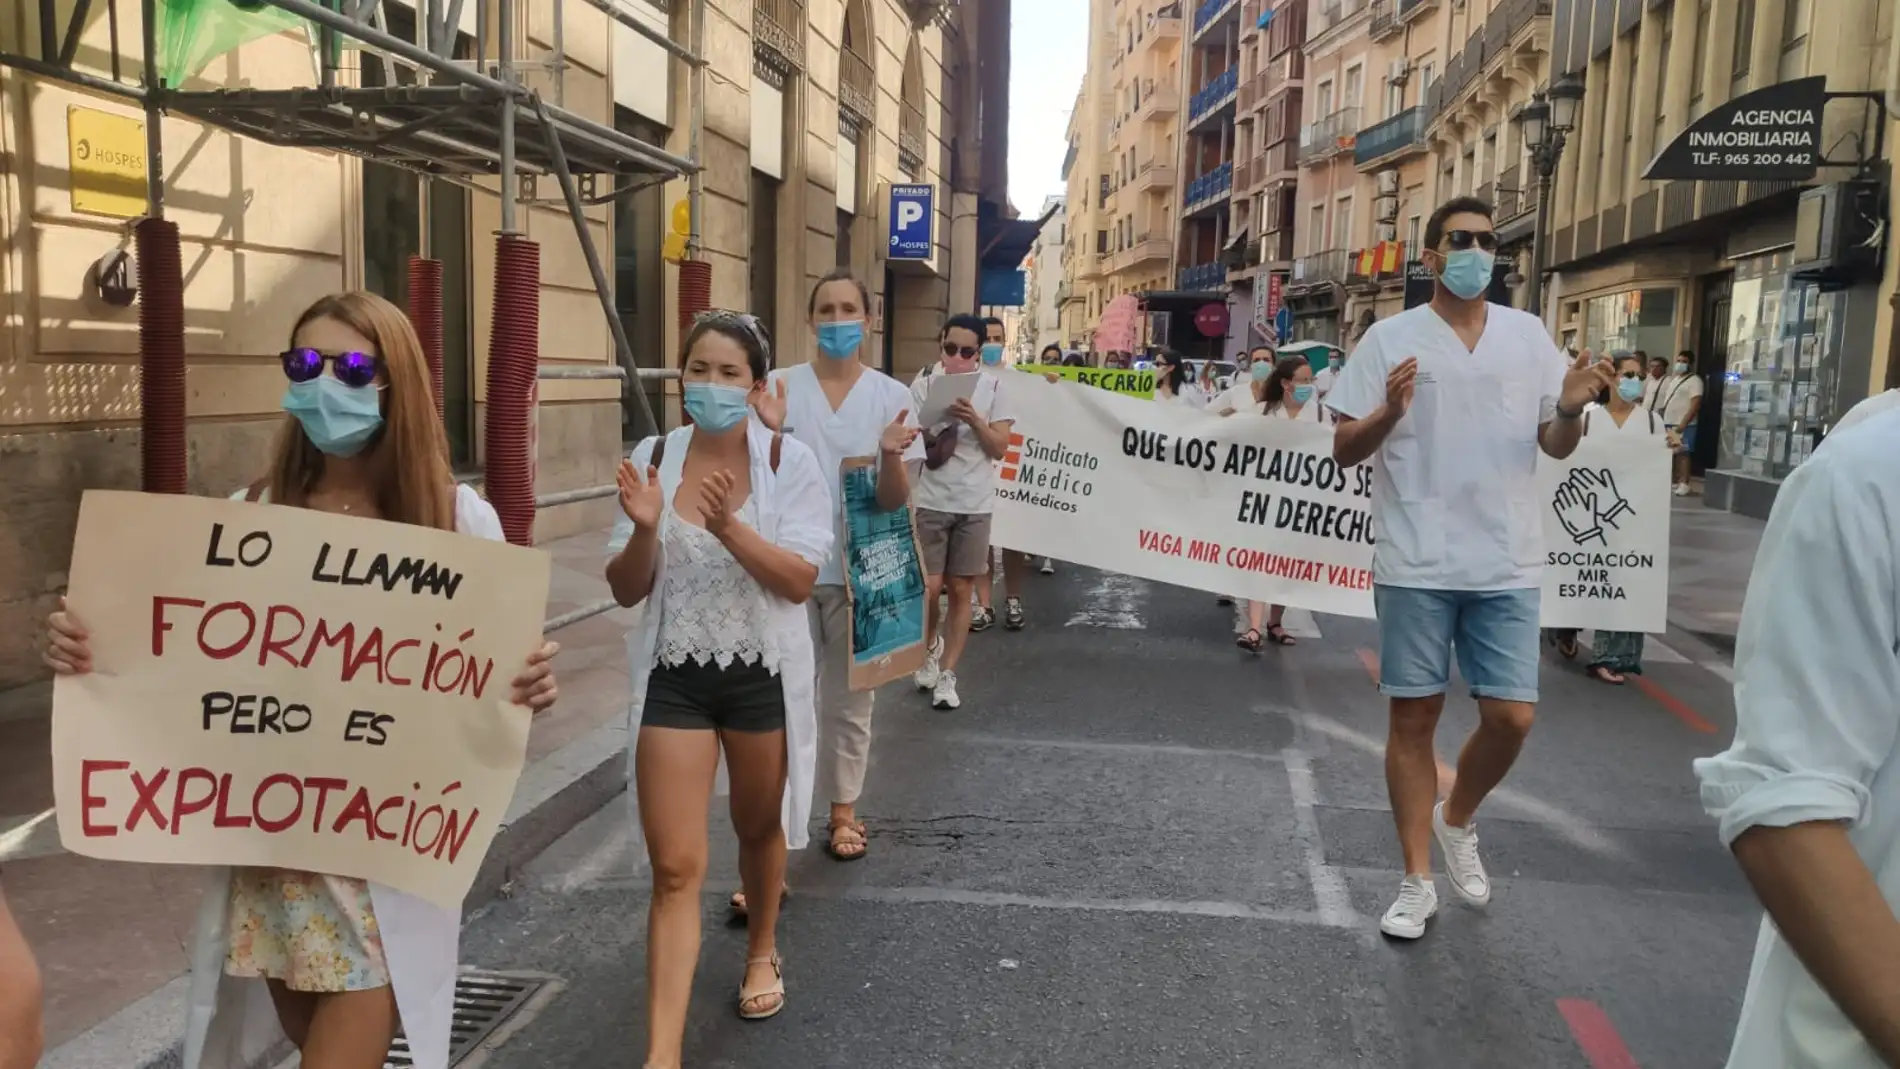 Los médicos internos residentes inician su tercera semana de protestas y huelga en busca de un convenio colectivo "digno"